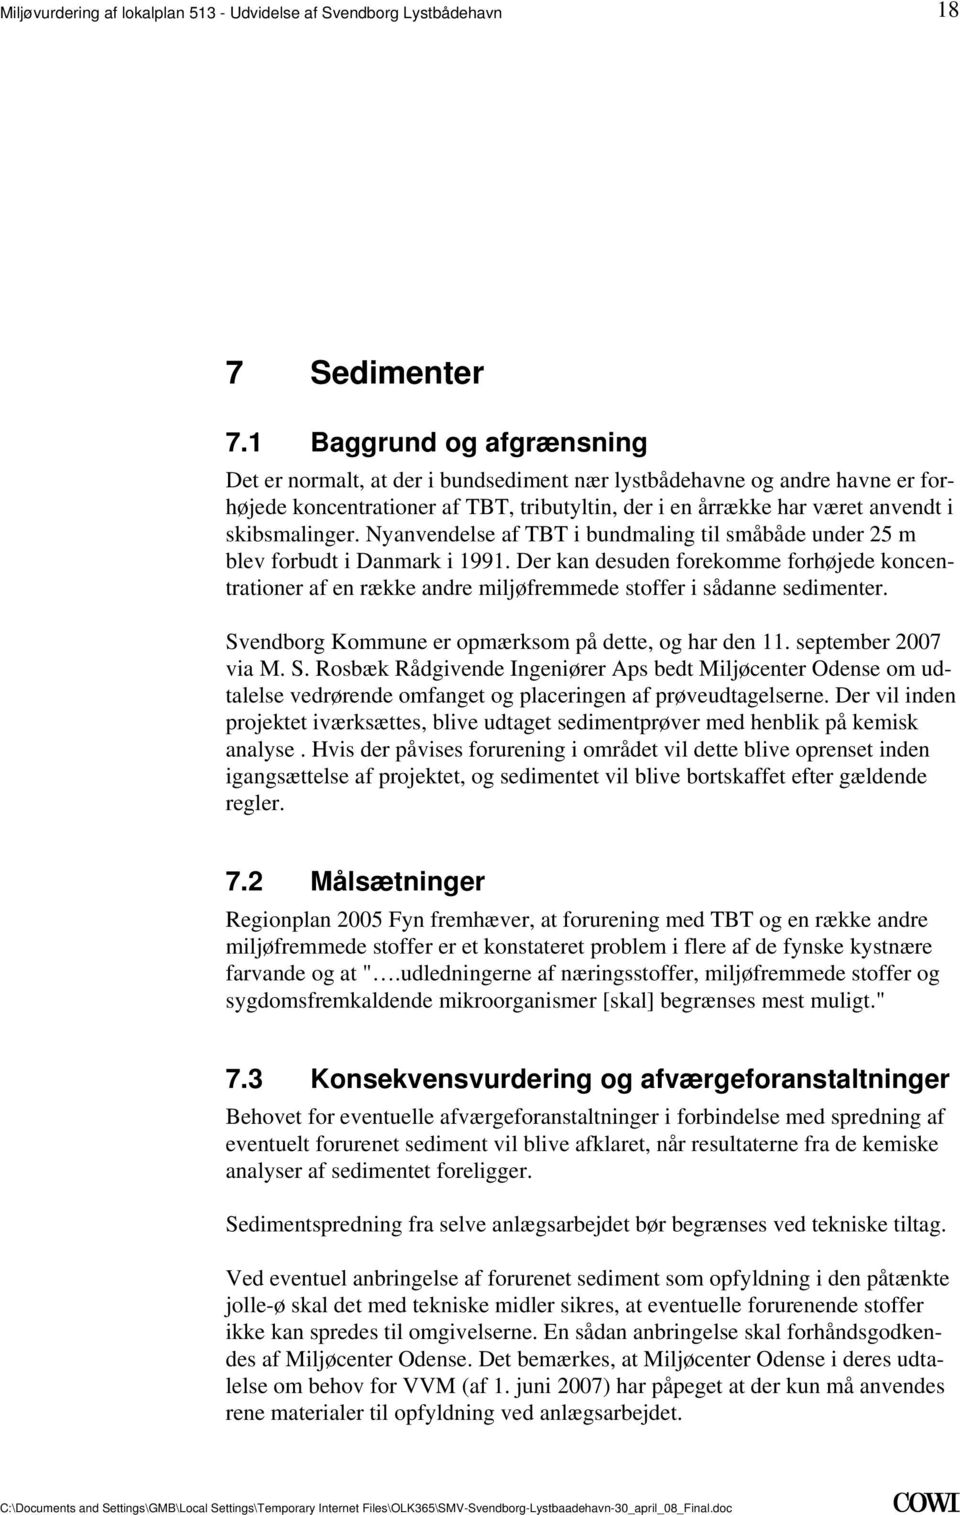 Nyanvendelse af TBT i bundmaling til småbåde under 25 m blev forbudt i Danmark i 1991. Der kan desuden forekomme forhøjede koncentrationer af en række andre miljøfremmede stoffer i sådanne sedimenter.